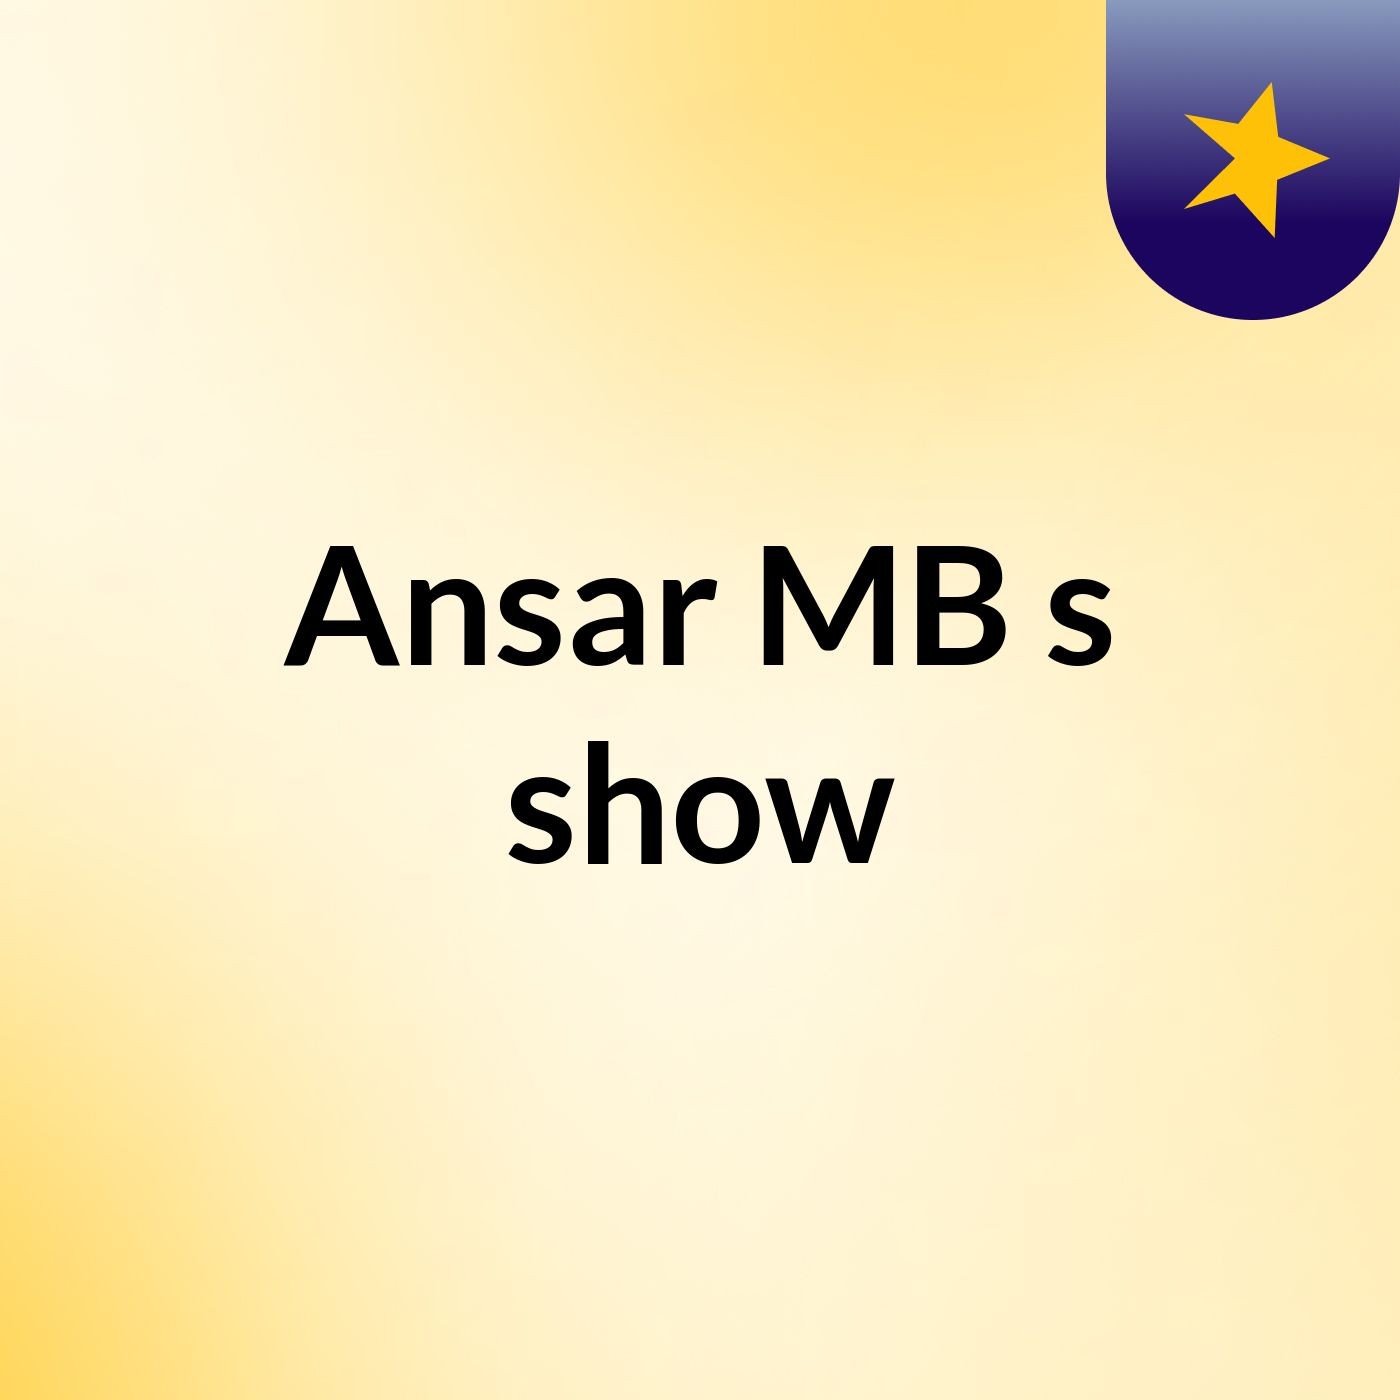 Ansar MB's show